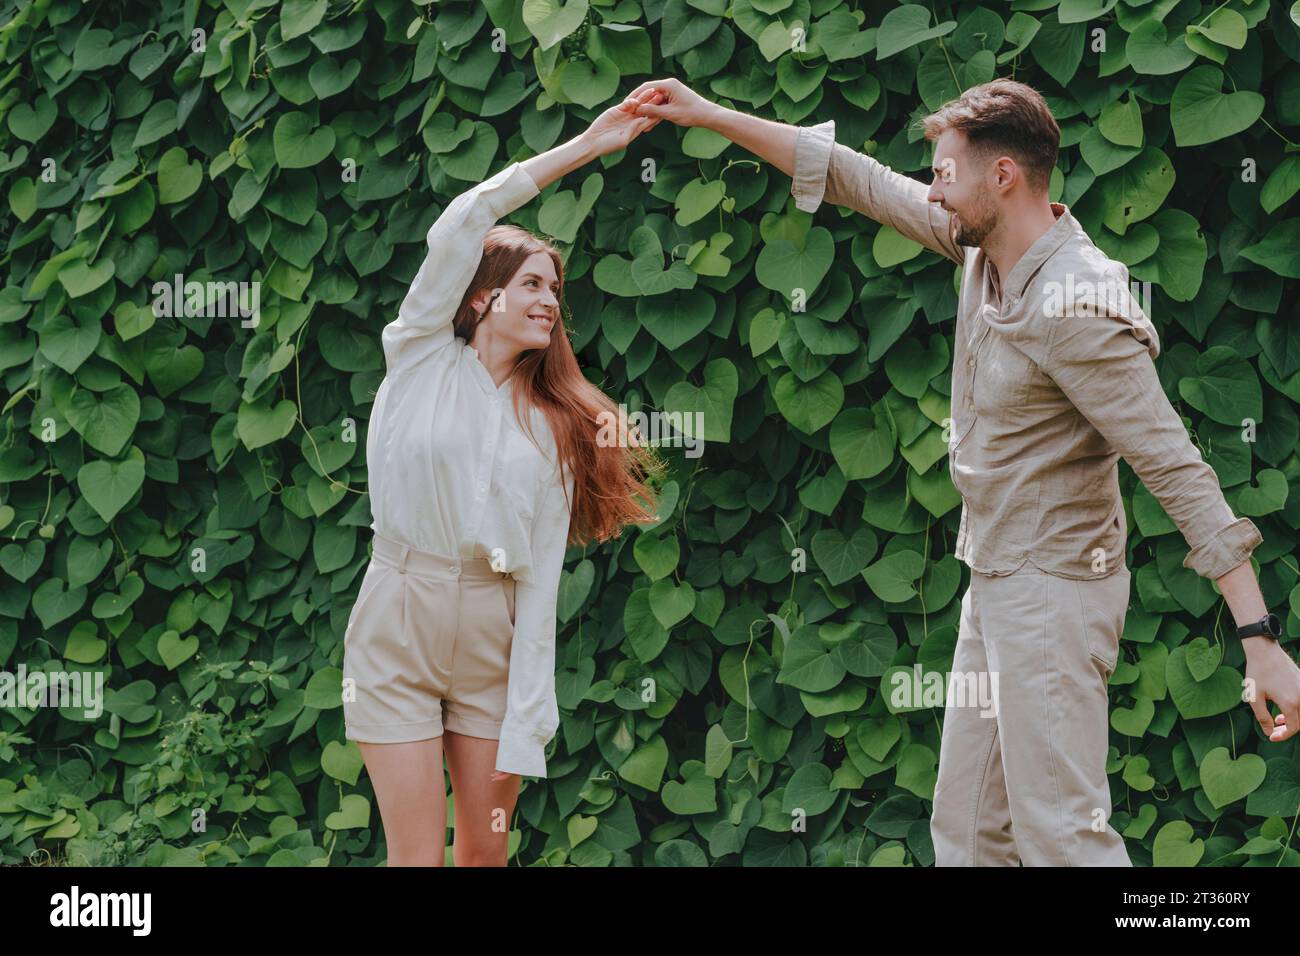 Happy couples dancing in front of plants in garden Stock Photo